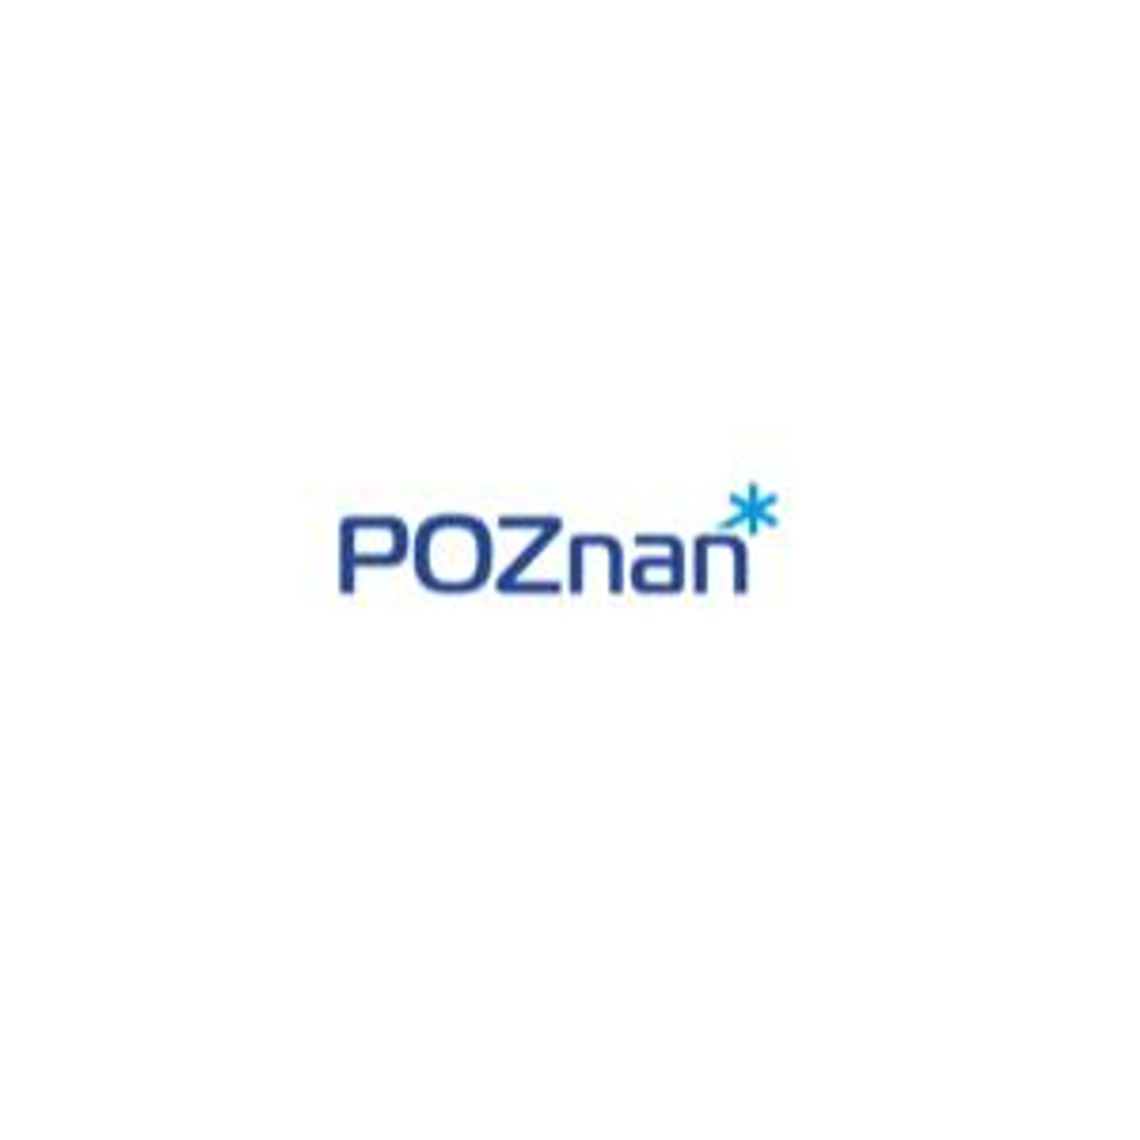 Oficjalny portal miasta Poznania - Poznan